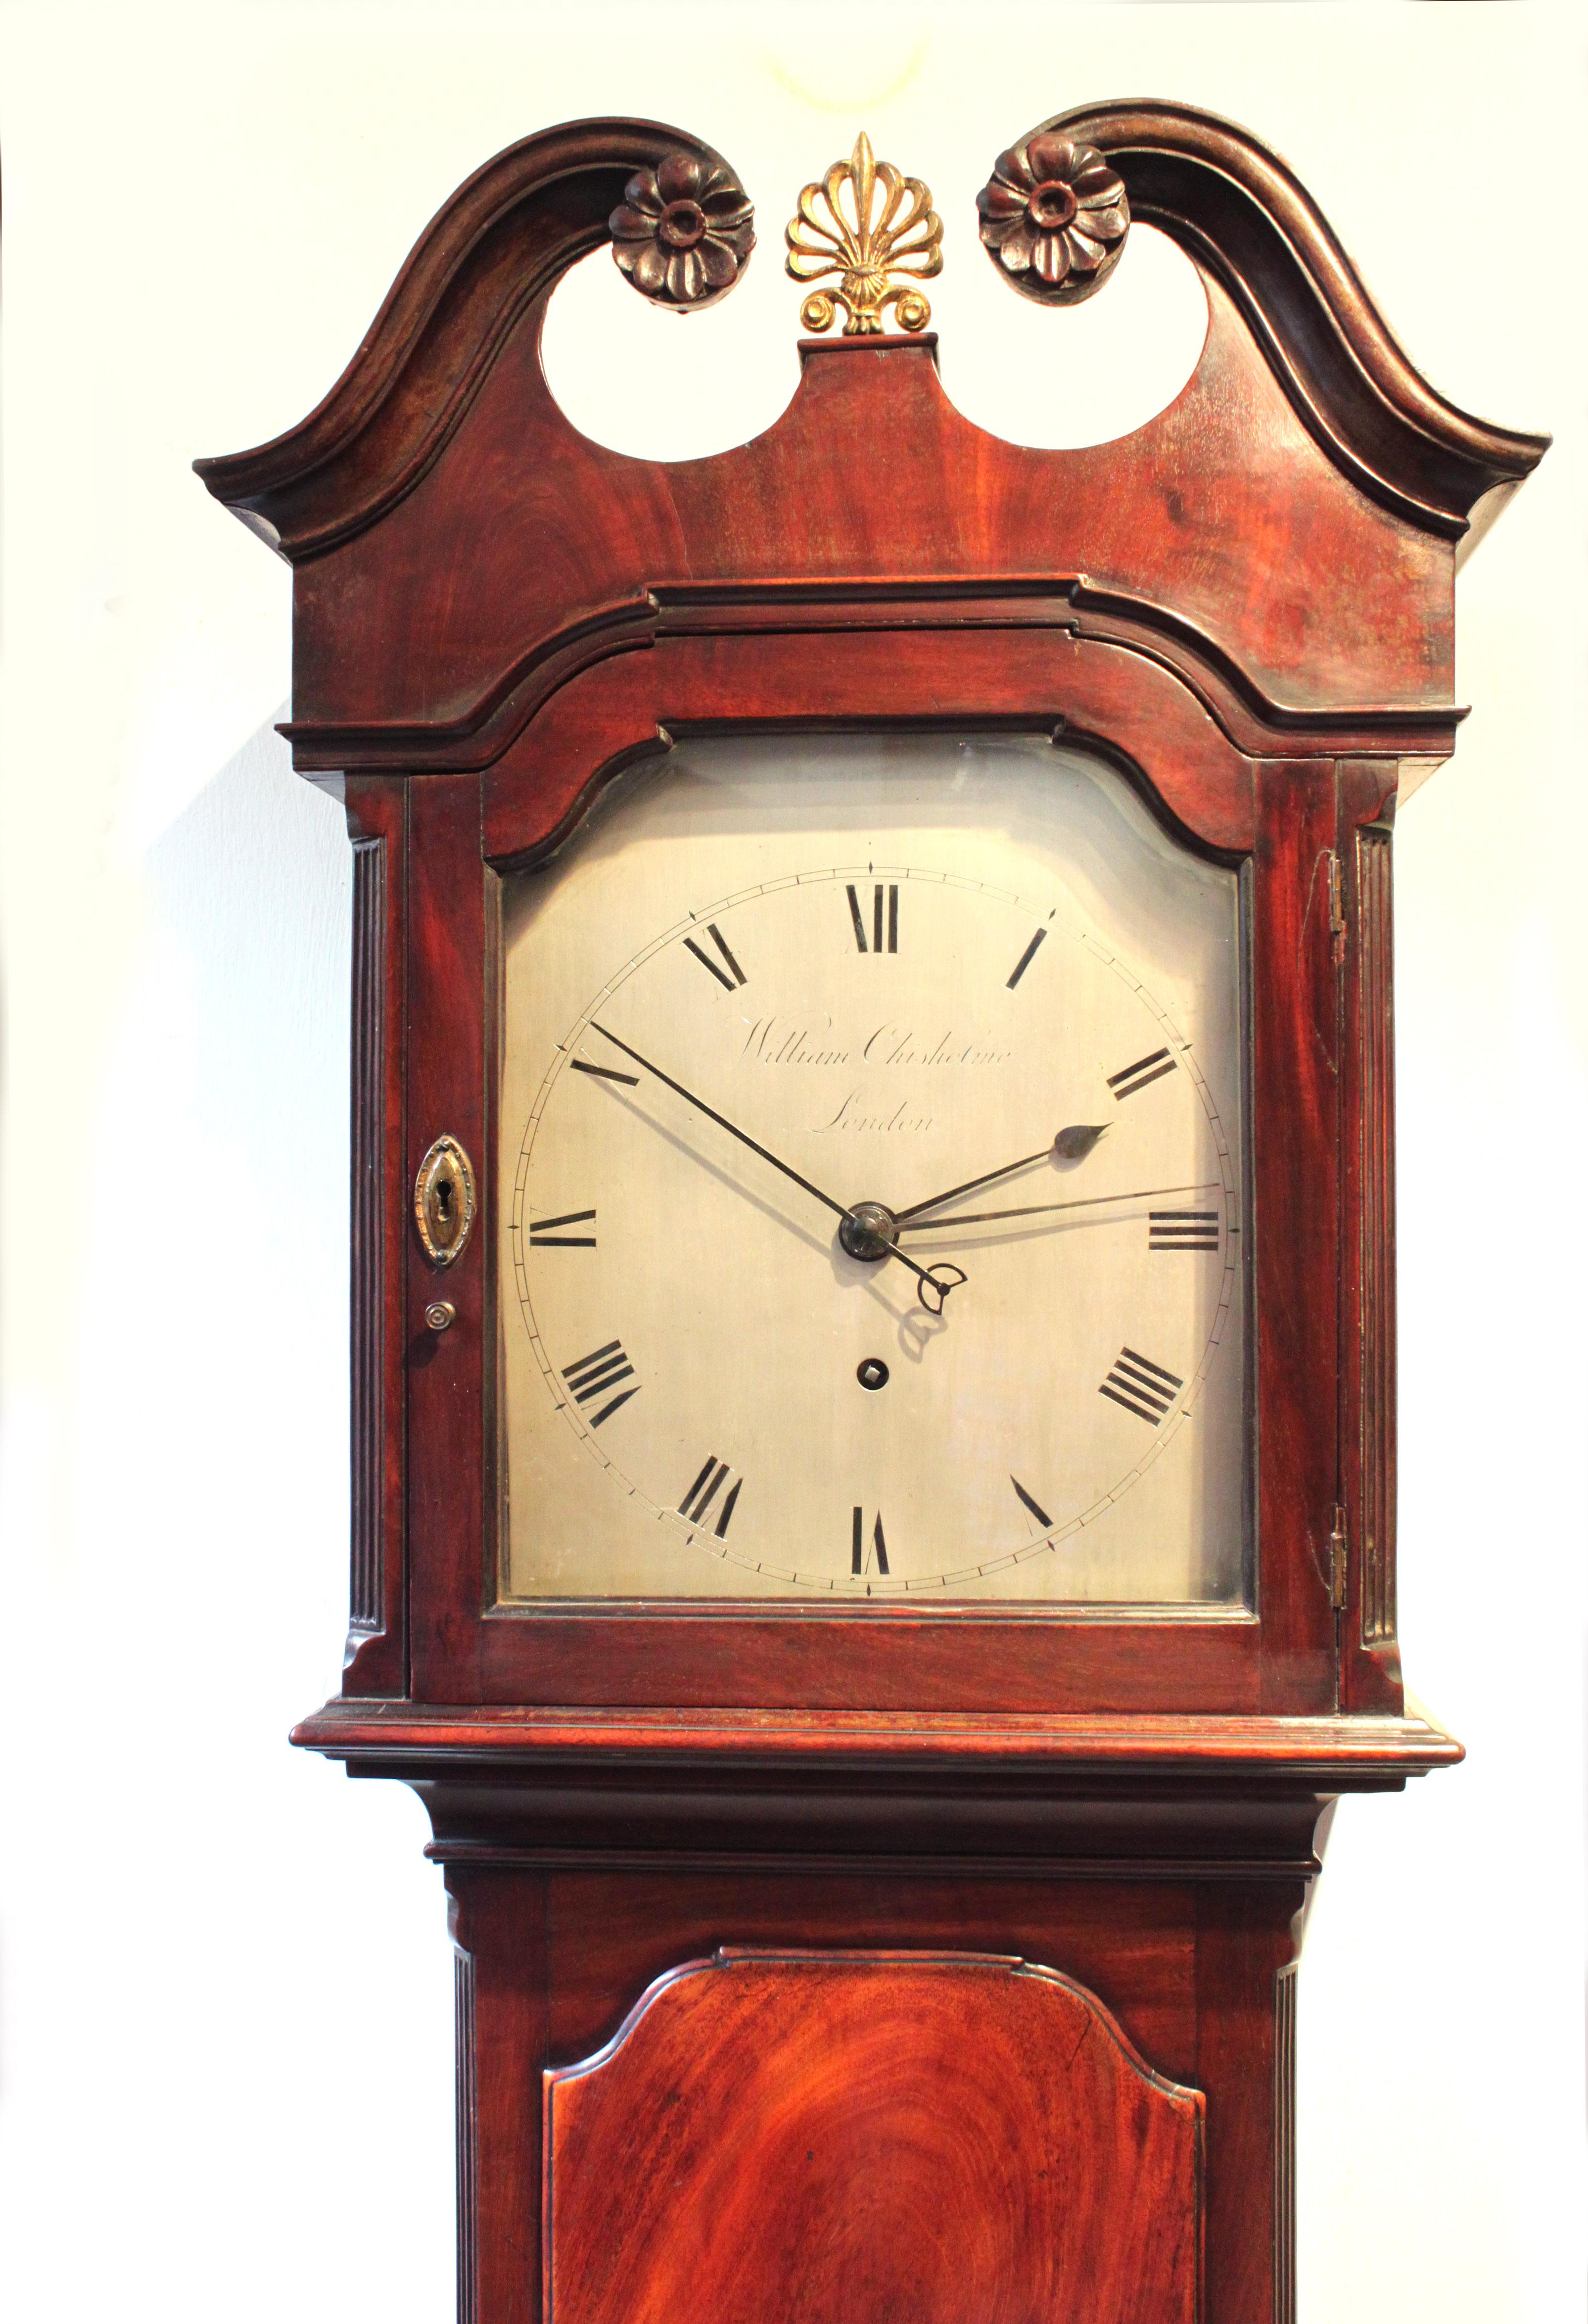 Eine Regulator-Uhr von William Chisholm, London. Baillie hat keine Aufzeichnungen über den Hersteller, aber aufgrund des Designs des Originalgehäuses gehen wir davon aus, dass es aus dem späten 18. Jahrhundert stammt, etwa um 1790. Das